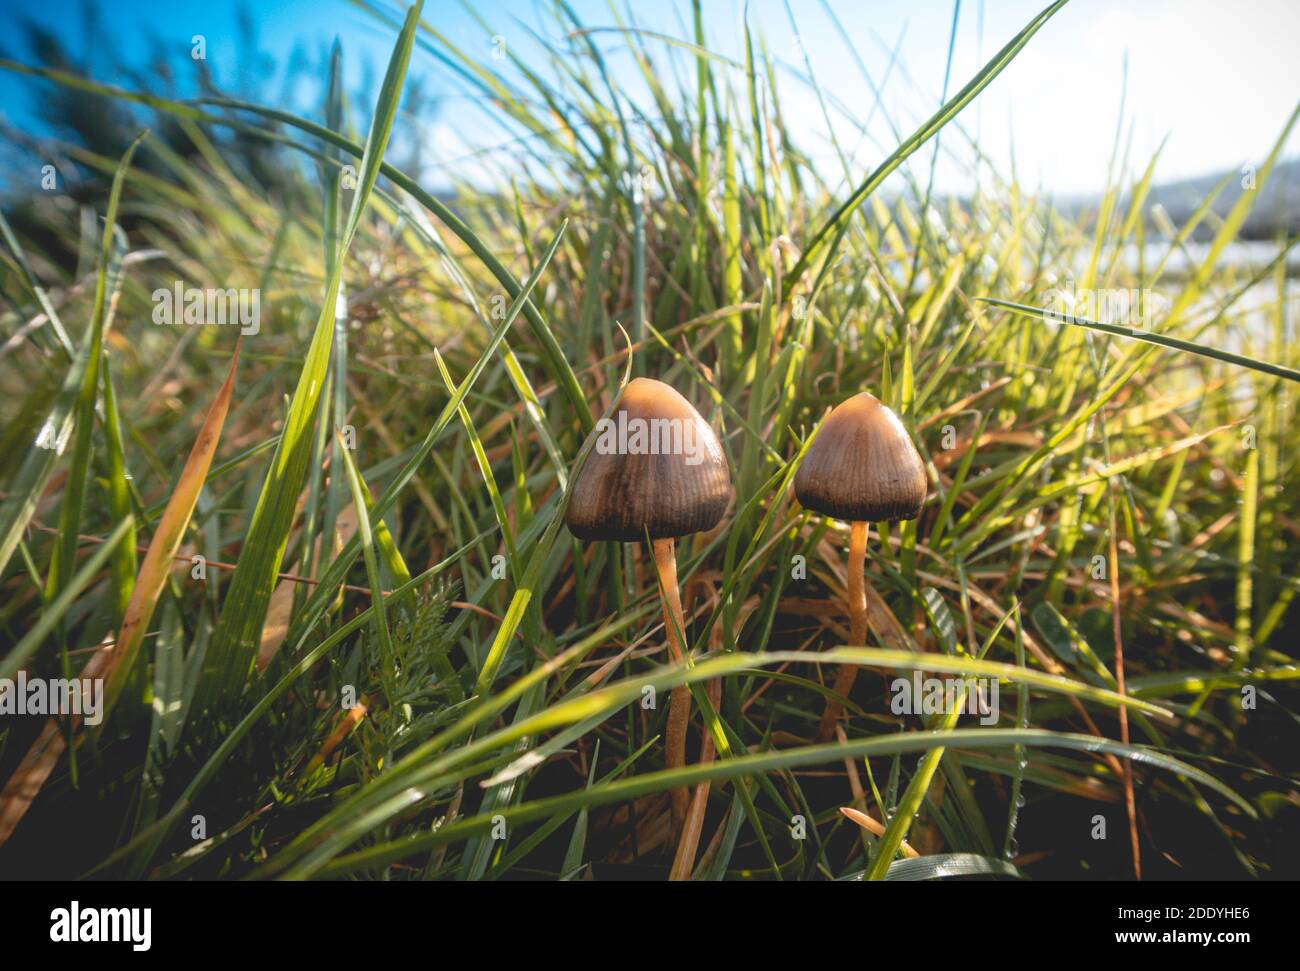 Un champignon Liberty cap (Psilocybe semilanceata), connu pour ses propriétés hallucinogènes, pousse dans un champ herbacé dans le sud-ouest de l'Irlande Banque D'Images